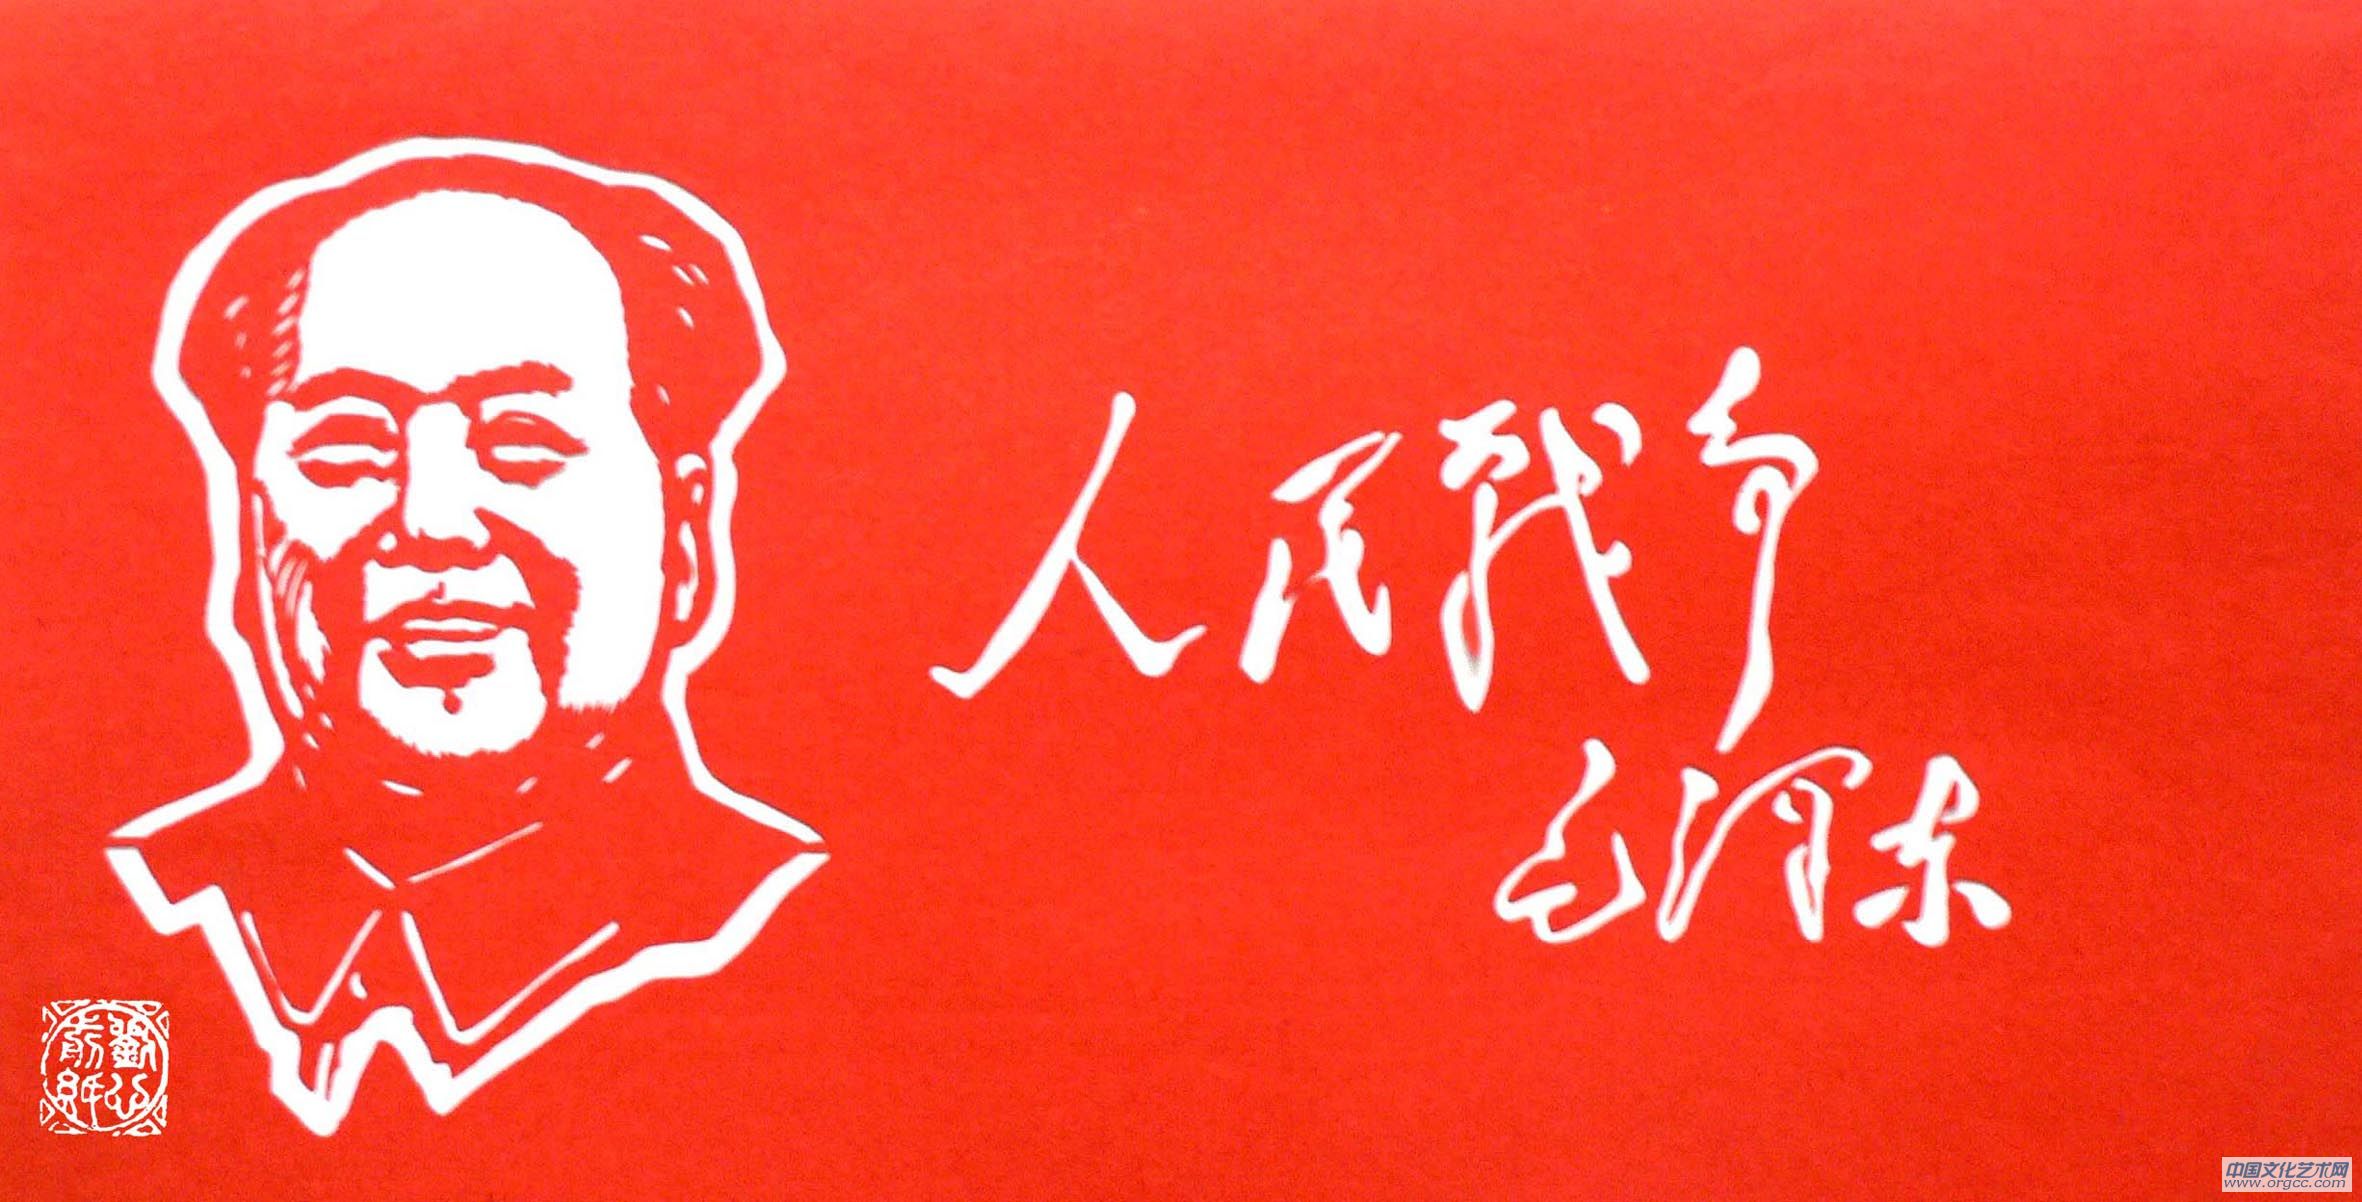 伟人剪纸肖像-艺网集市-中国文化艺术网-专注文化